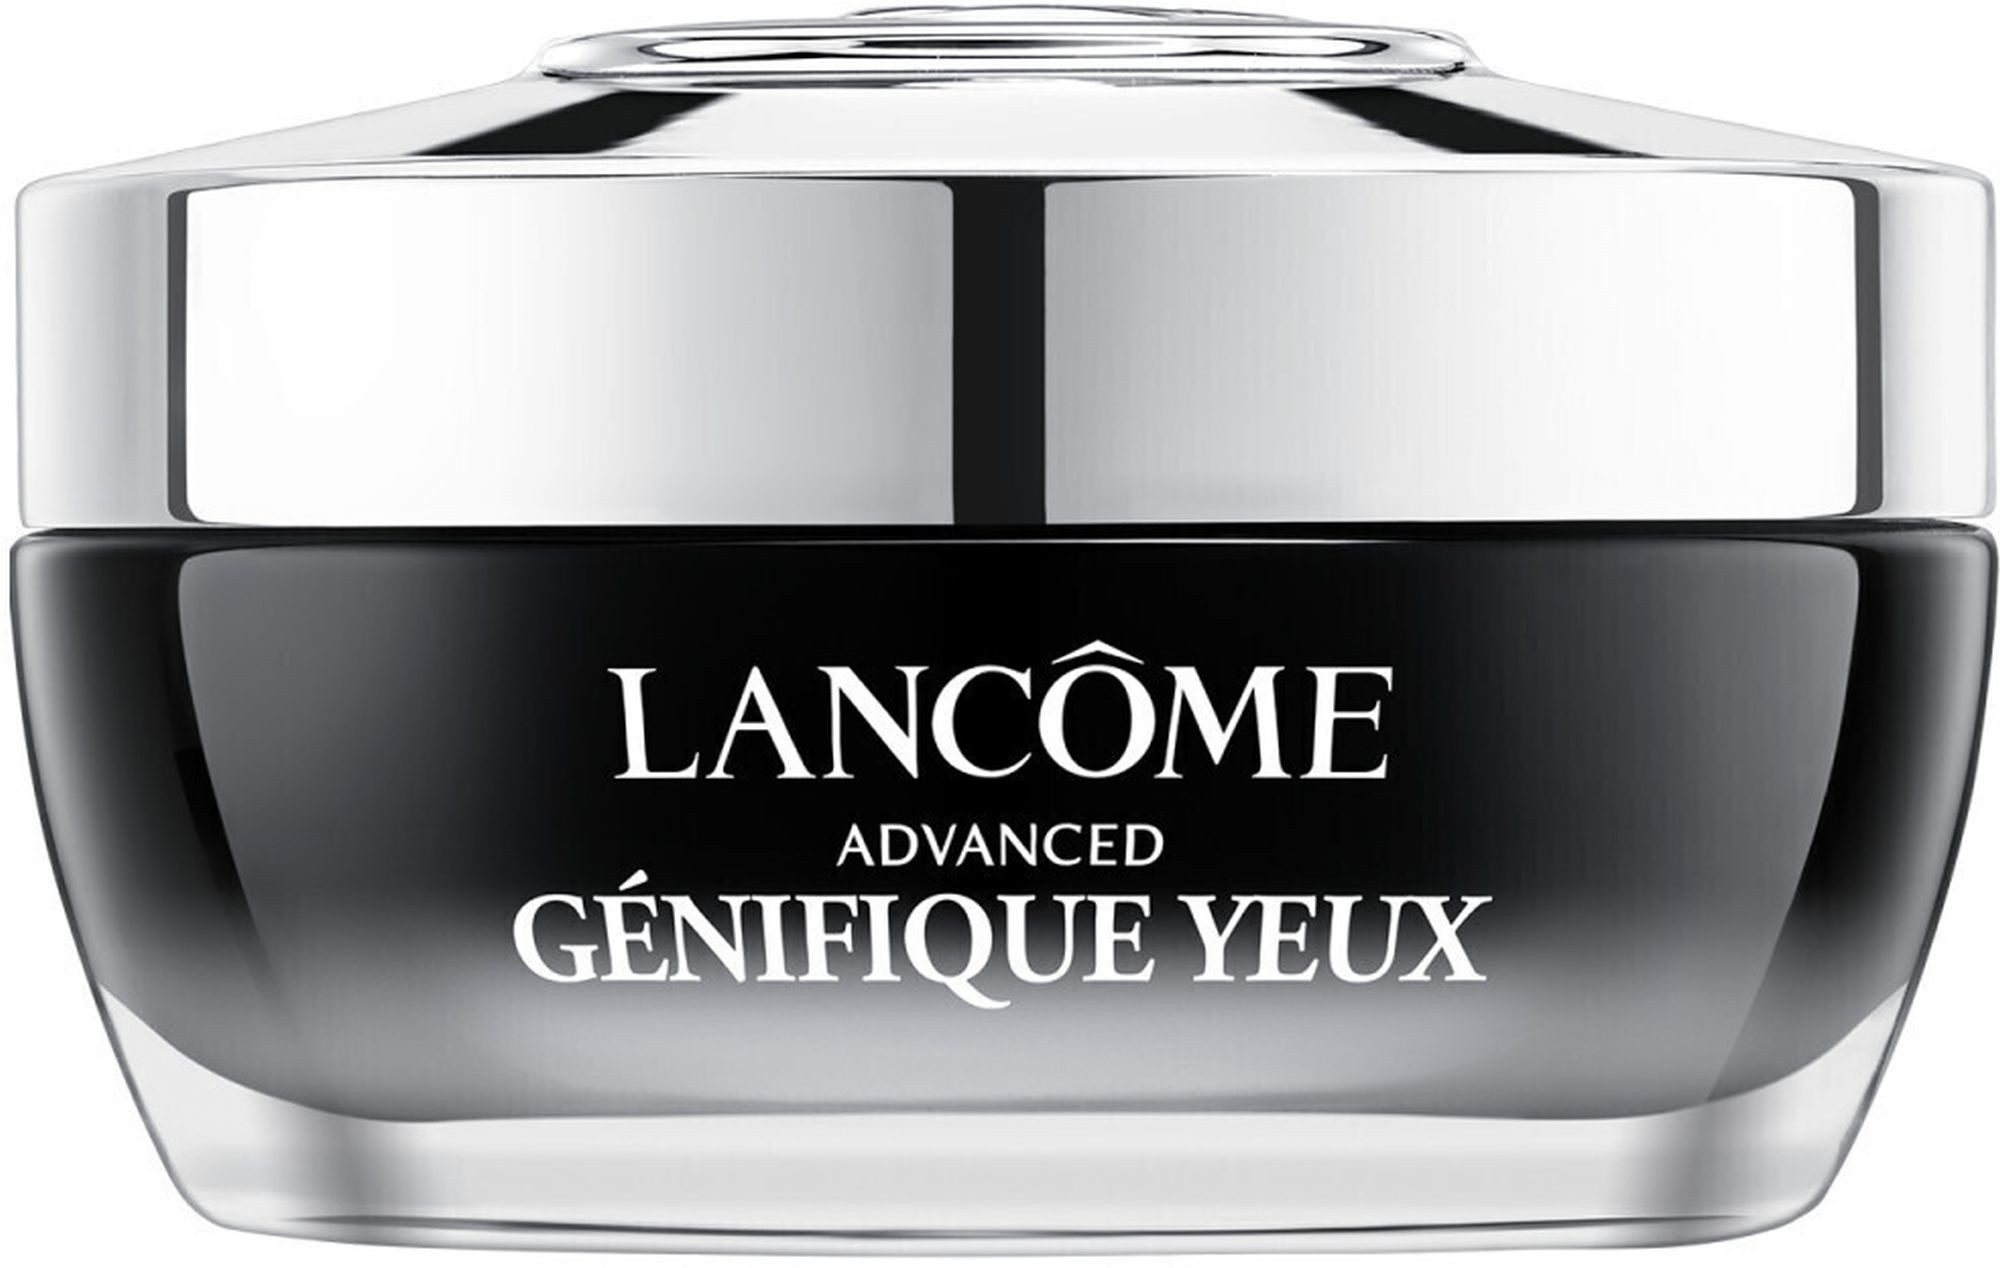 LANCOME Anti-Aging-Augencreme Advanced Génifique Yeux Augencreme, Creme